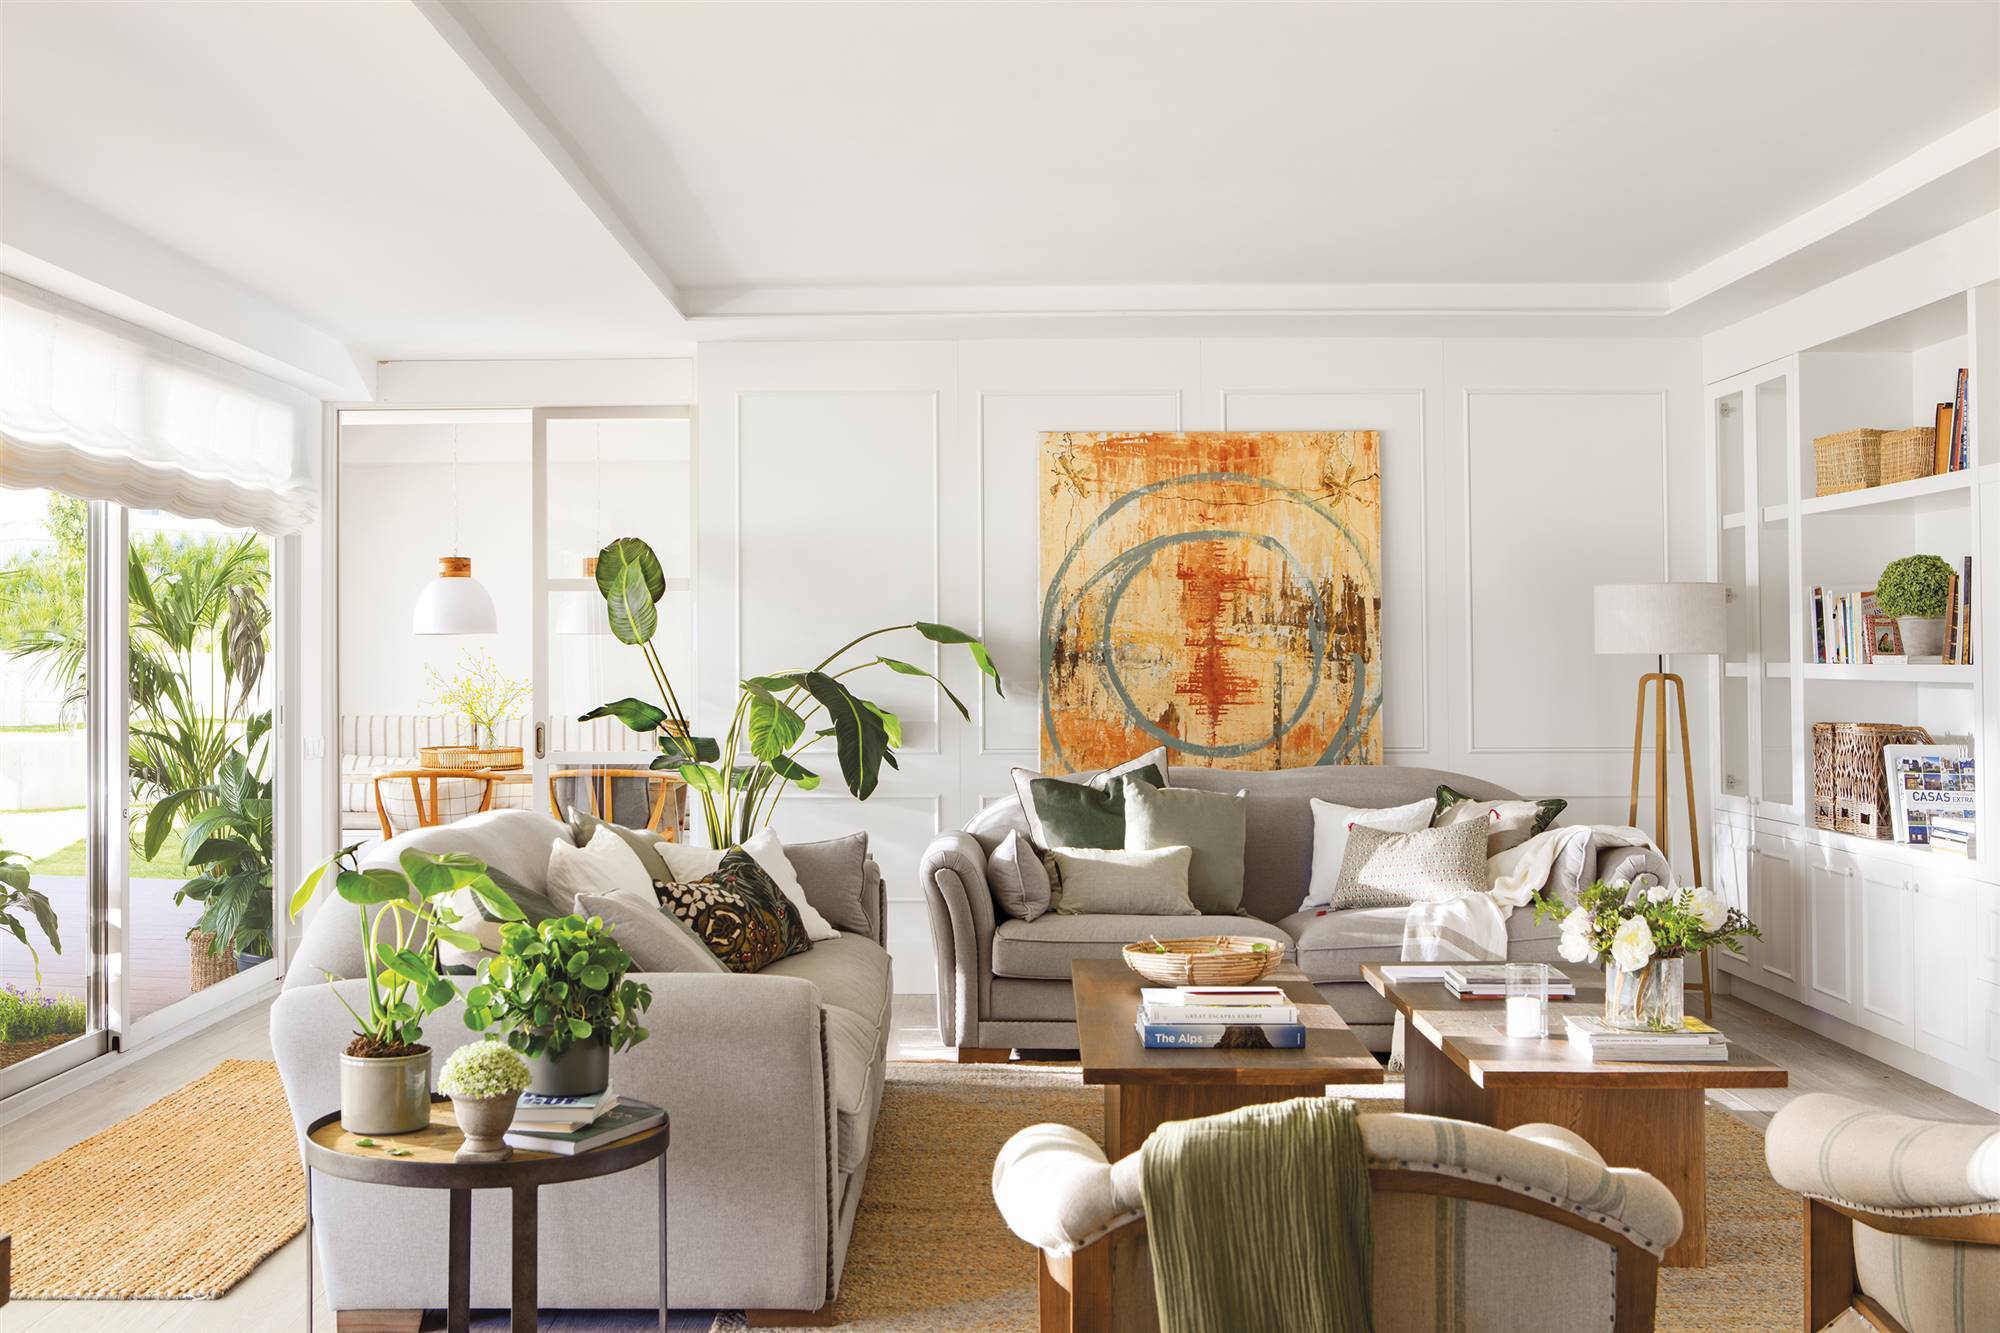 Salón con molduras, sofás en gris, estantería blanca, cuadro y plantas.